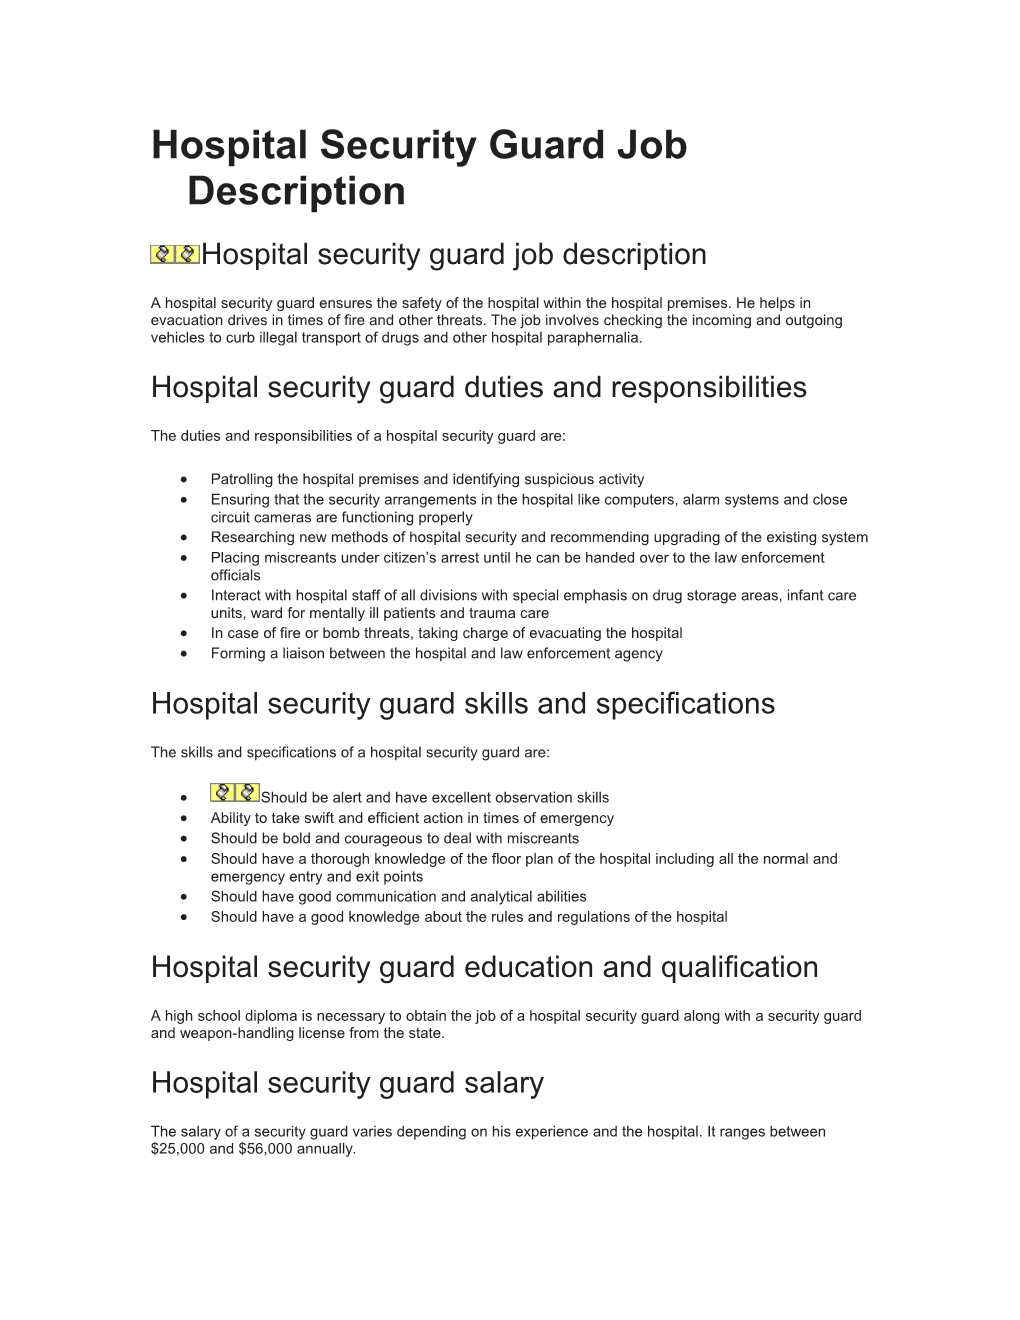 Hospital Security Guard Job Description